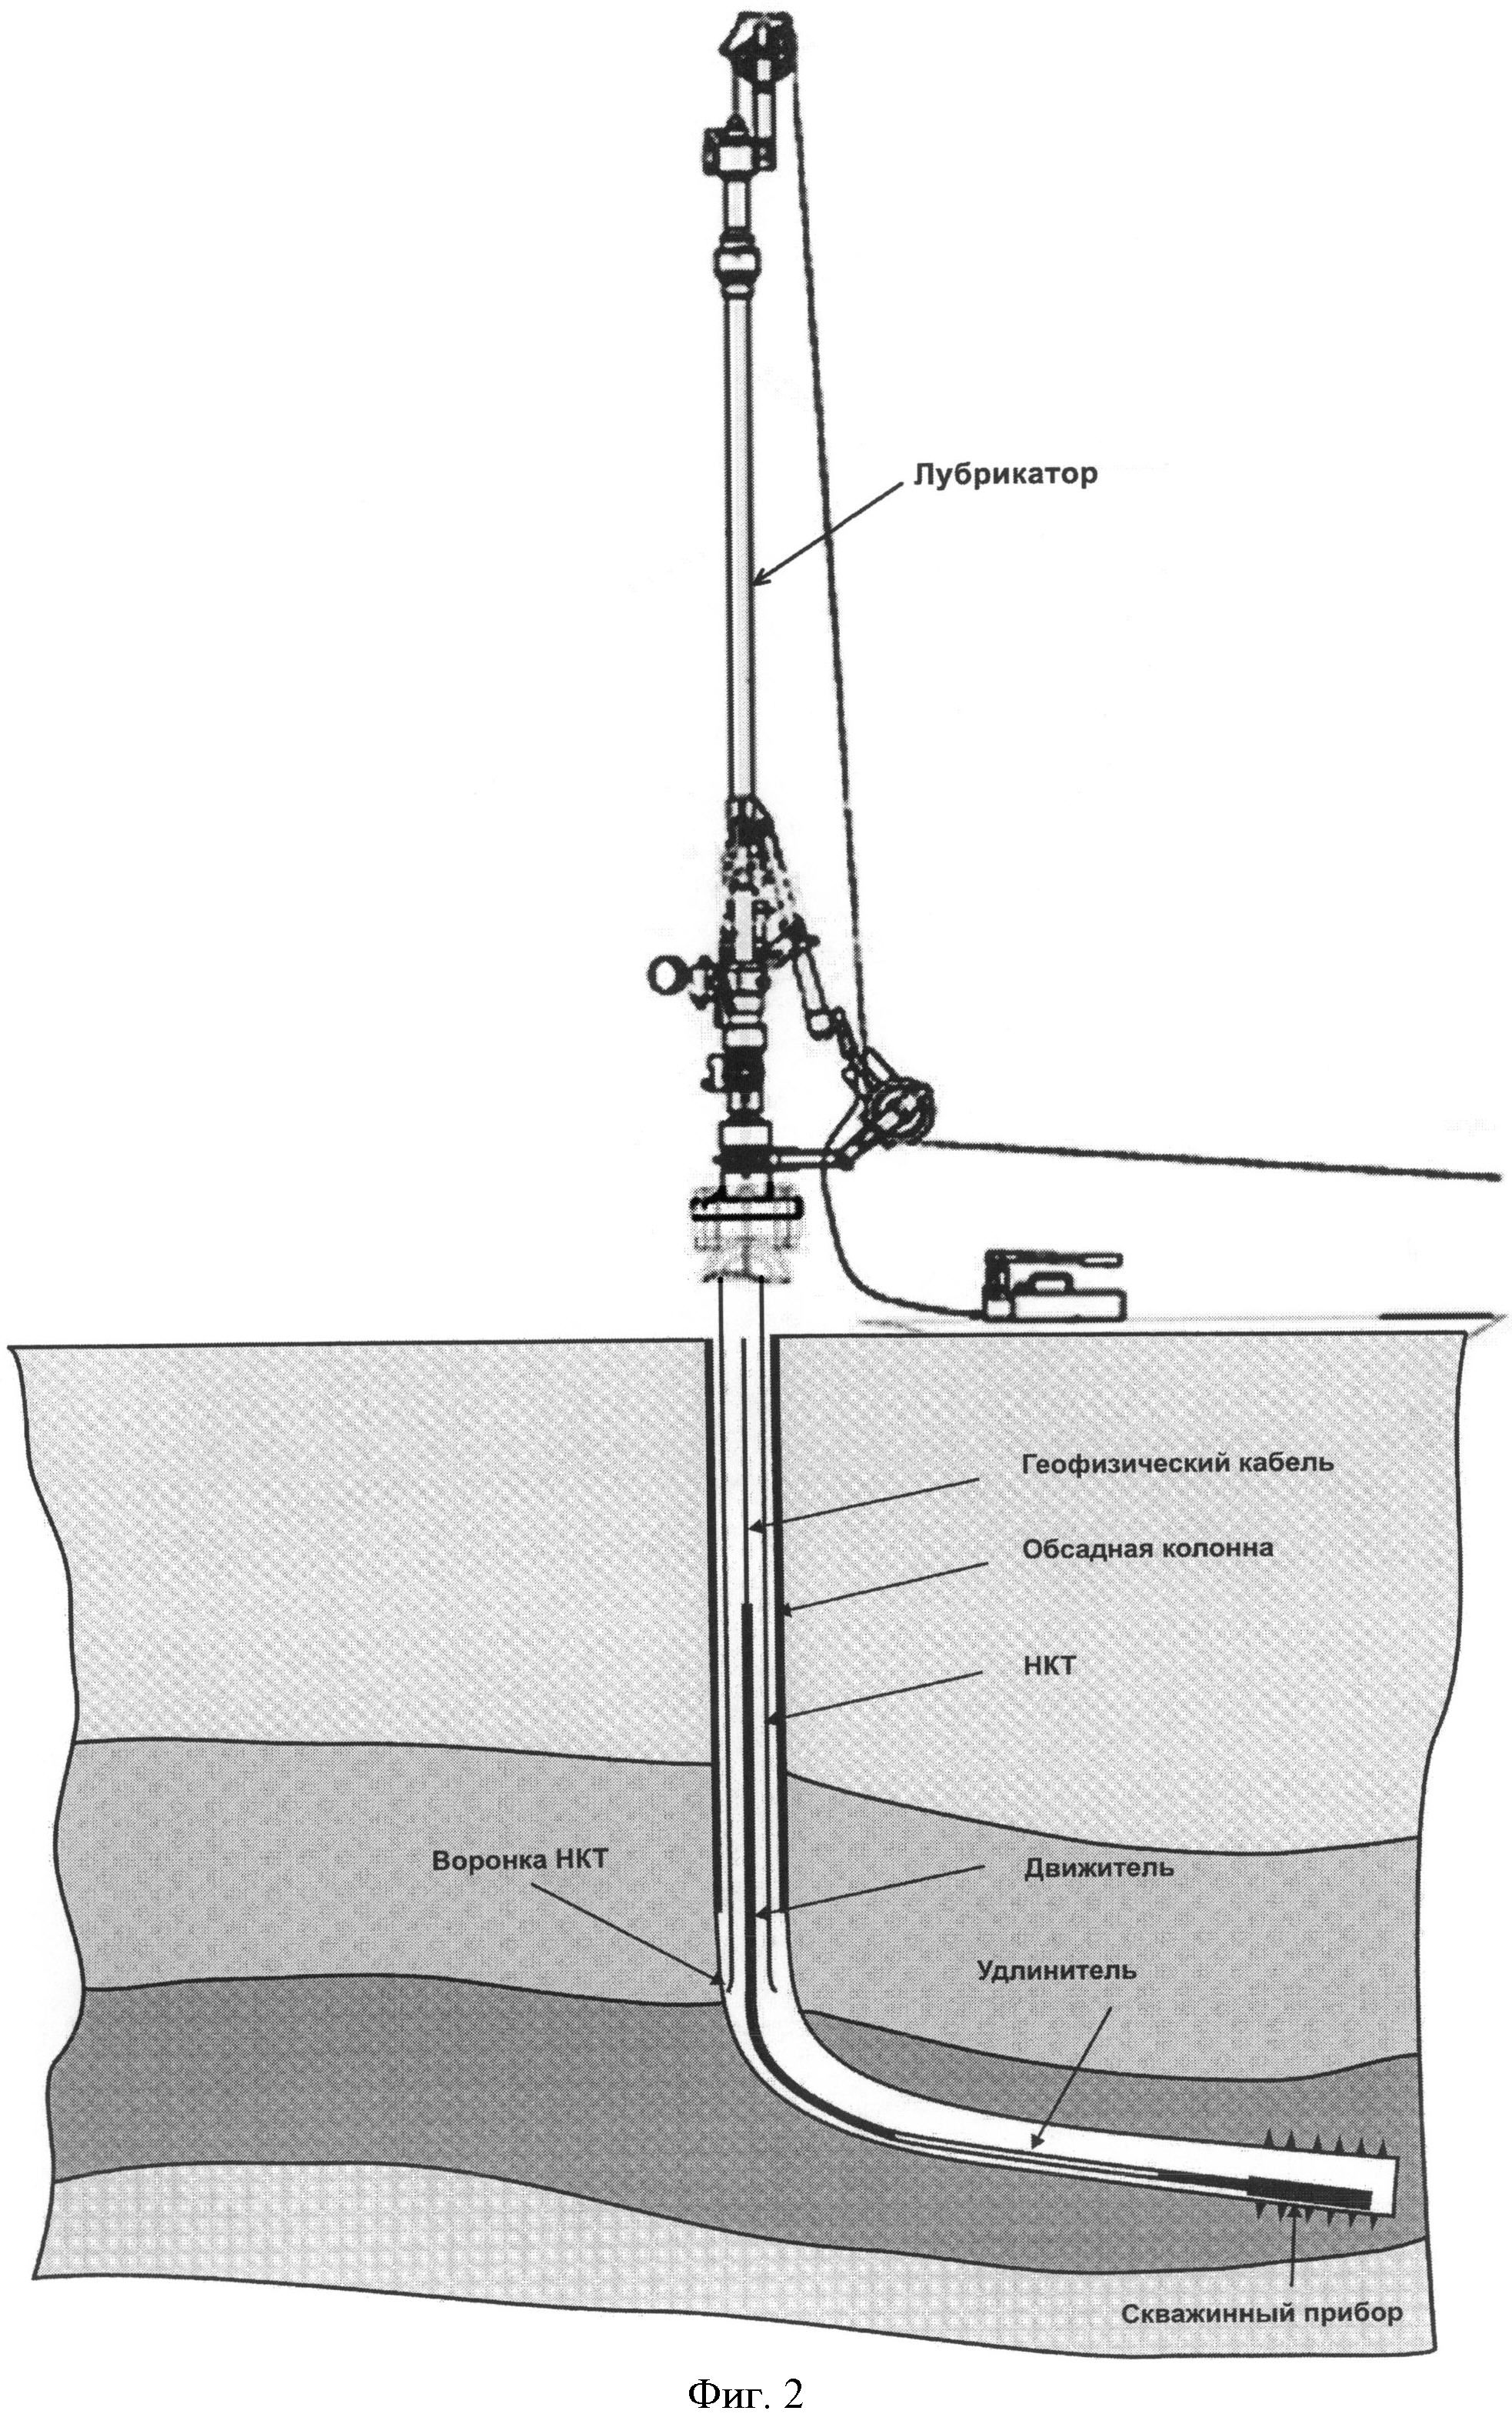 Реферат: Геофизические методы исследования скважин и скваженная аппаратура